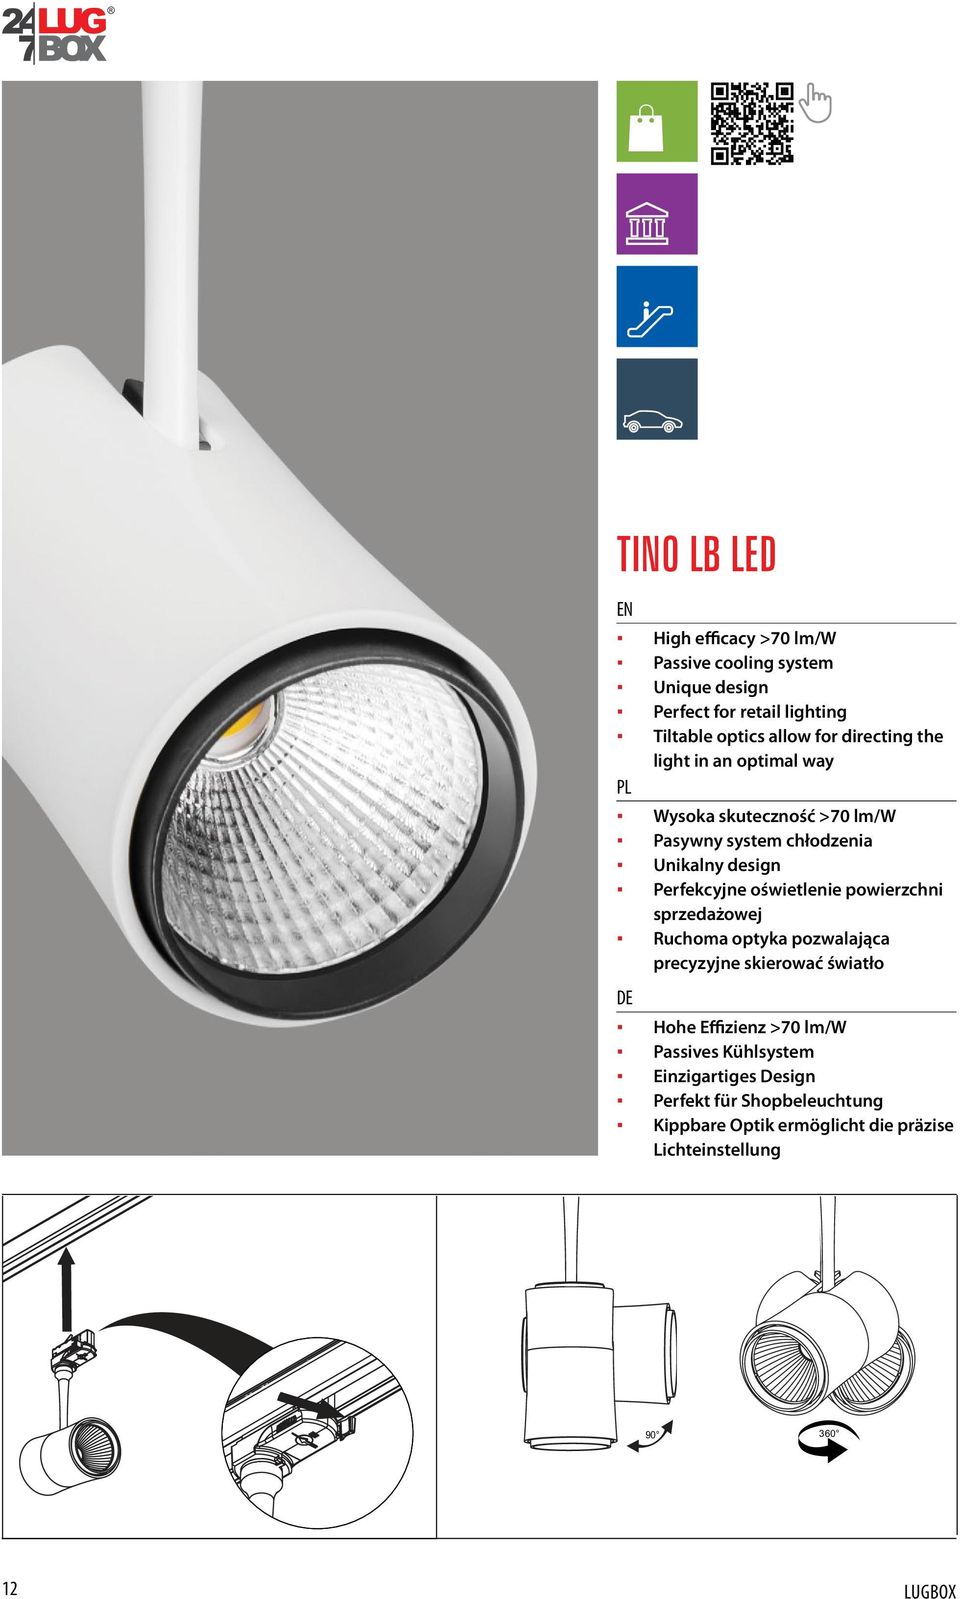 Perfekcyjne oświetlenie powierzchni sprzedażowej Ruchoma optyka pozwalająca precyzyjne skierować światło Hohe Effizienz >70